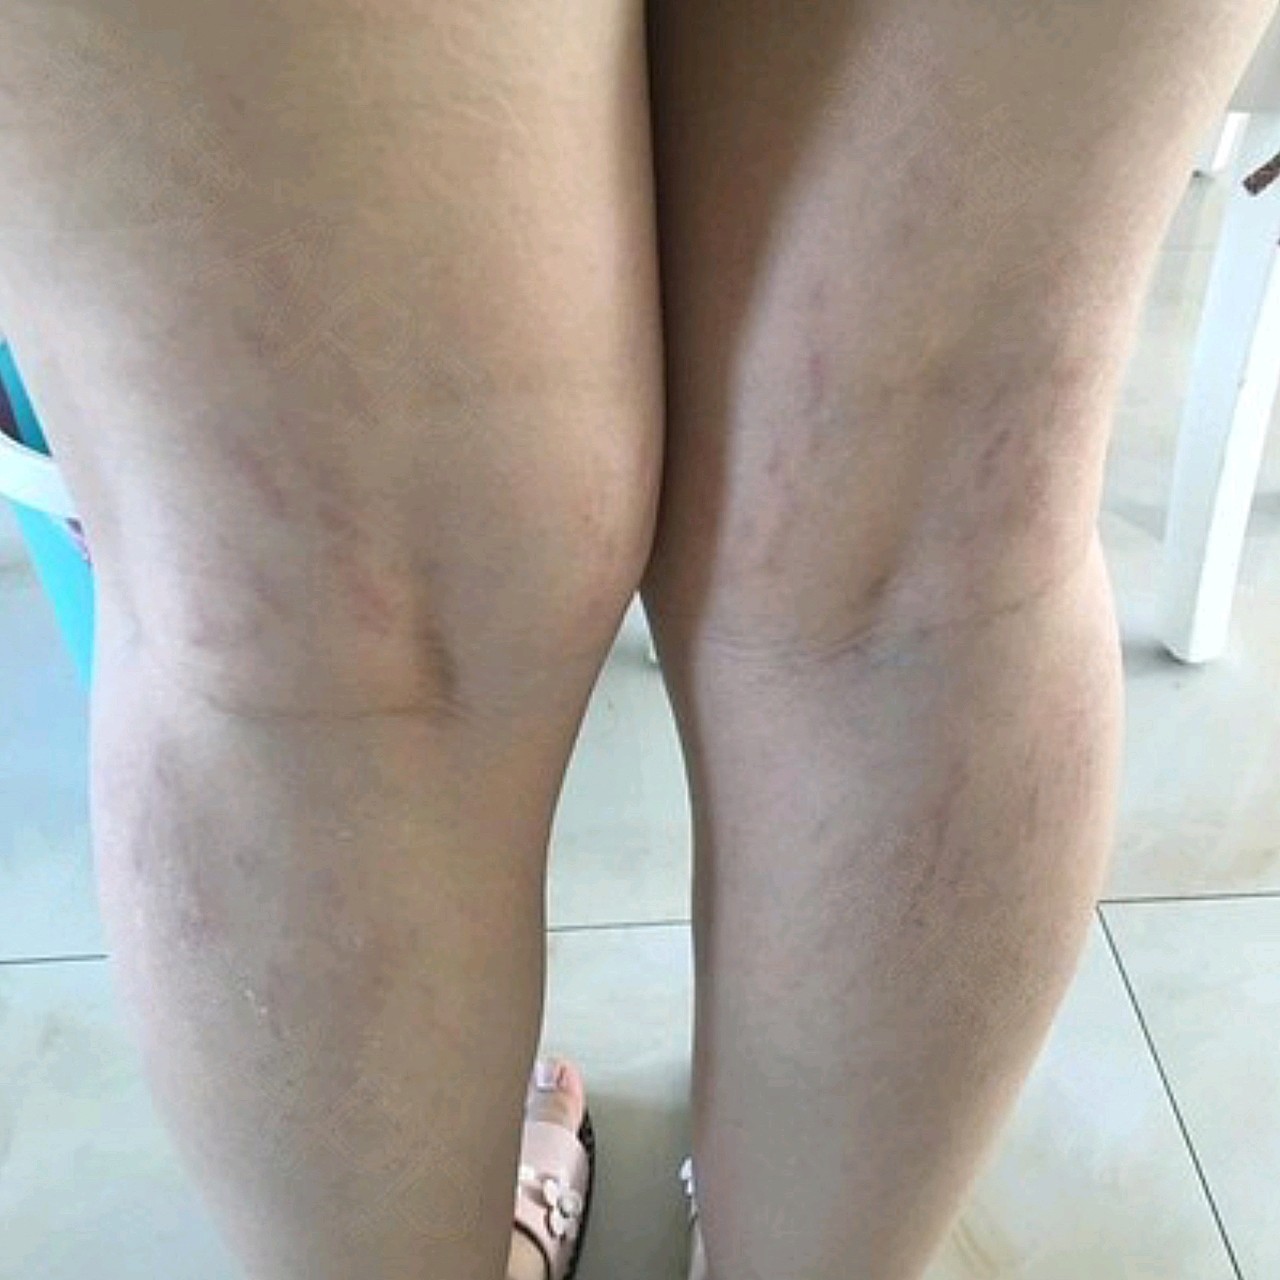 我的妊娠纹长到腿上了,而且颜色是紫色的,就很显眼难看